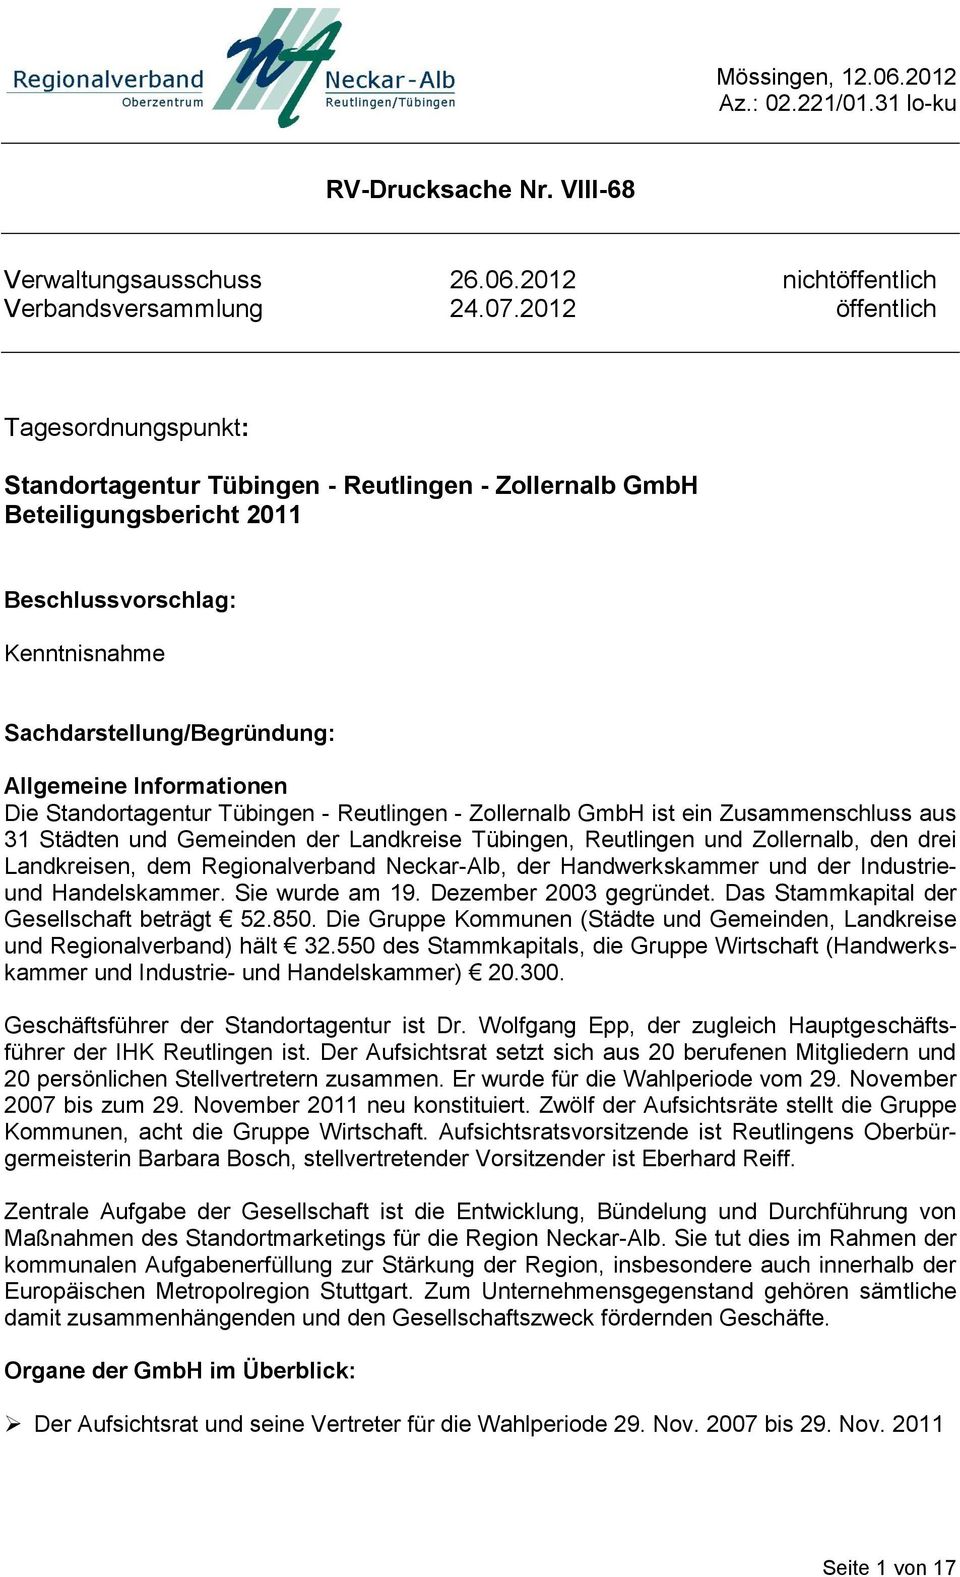 Informationen Die Standortagentur Tübingen - Reutlingen - Zollernalb GmbH ist ein Zusammenschluss aus 31 Städten und Gemeinden der Landkreise Tübingen, Reutlingen und Zollernalb, den drei